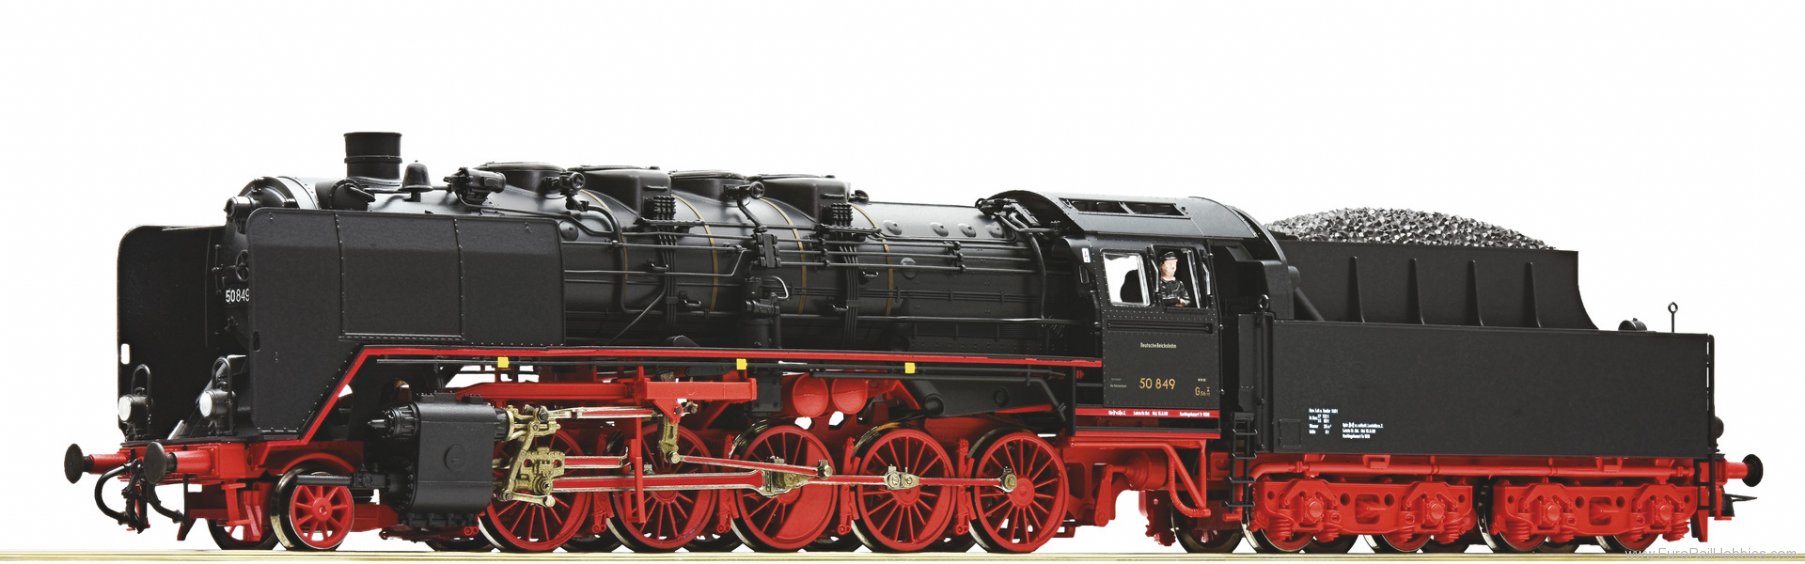 Roco 7120011 Steam locomotive 50 849, DR (Marklin AC Digit